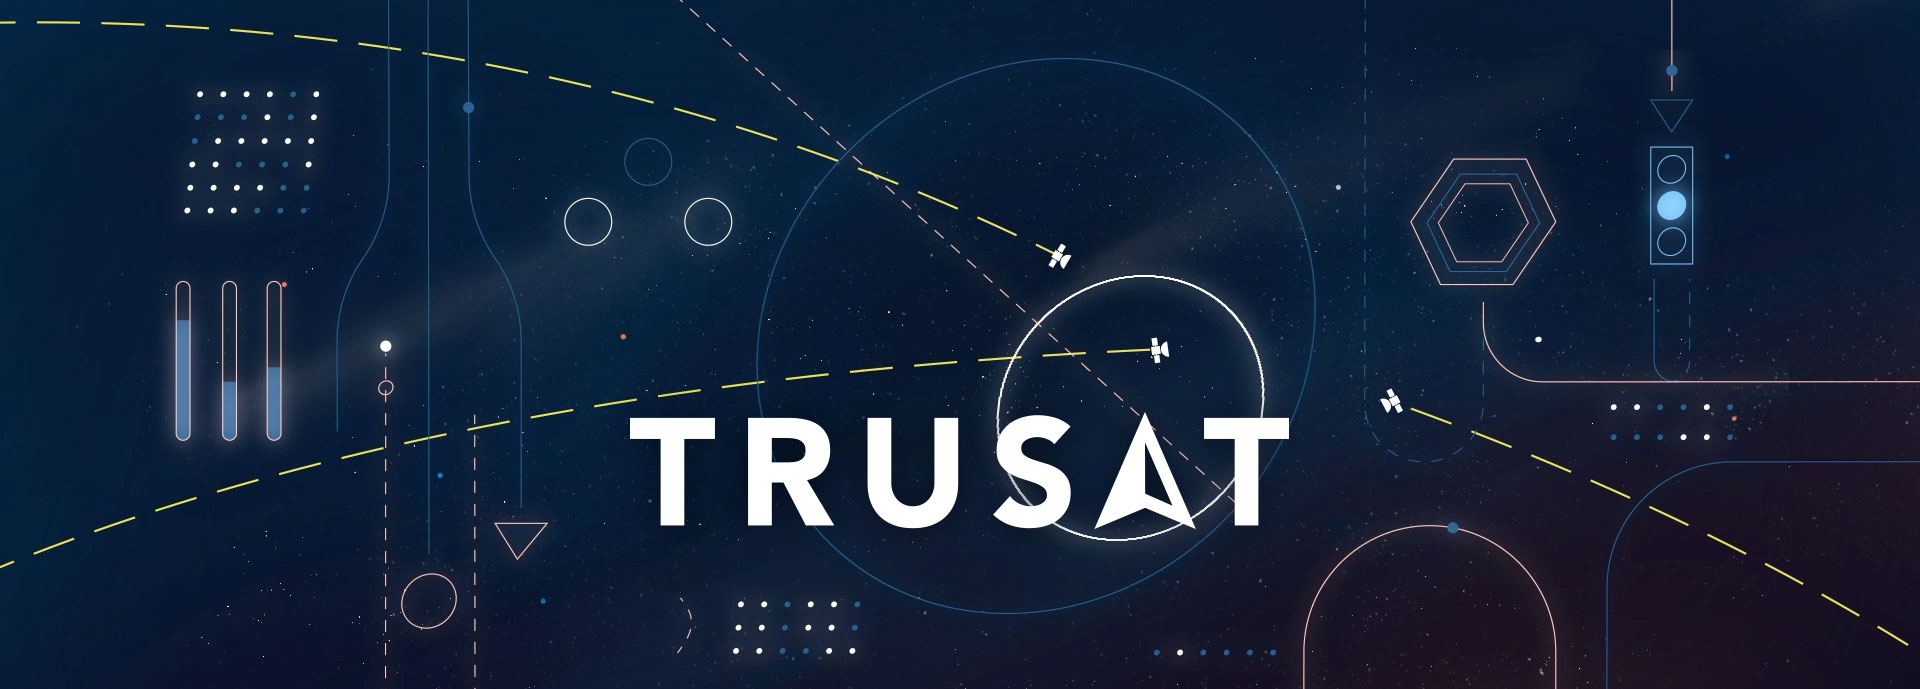 TruSat banner